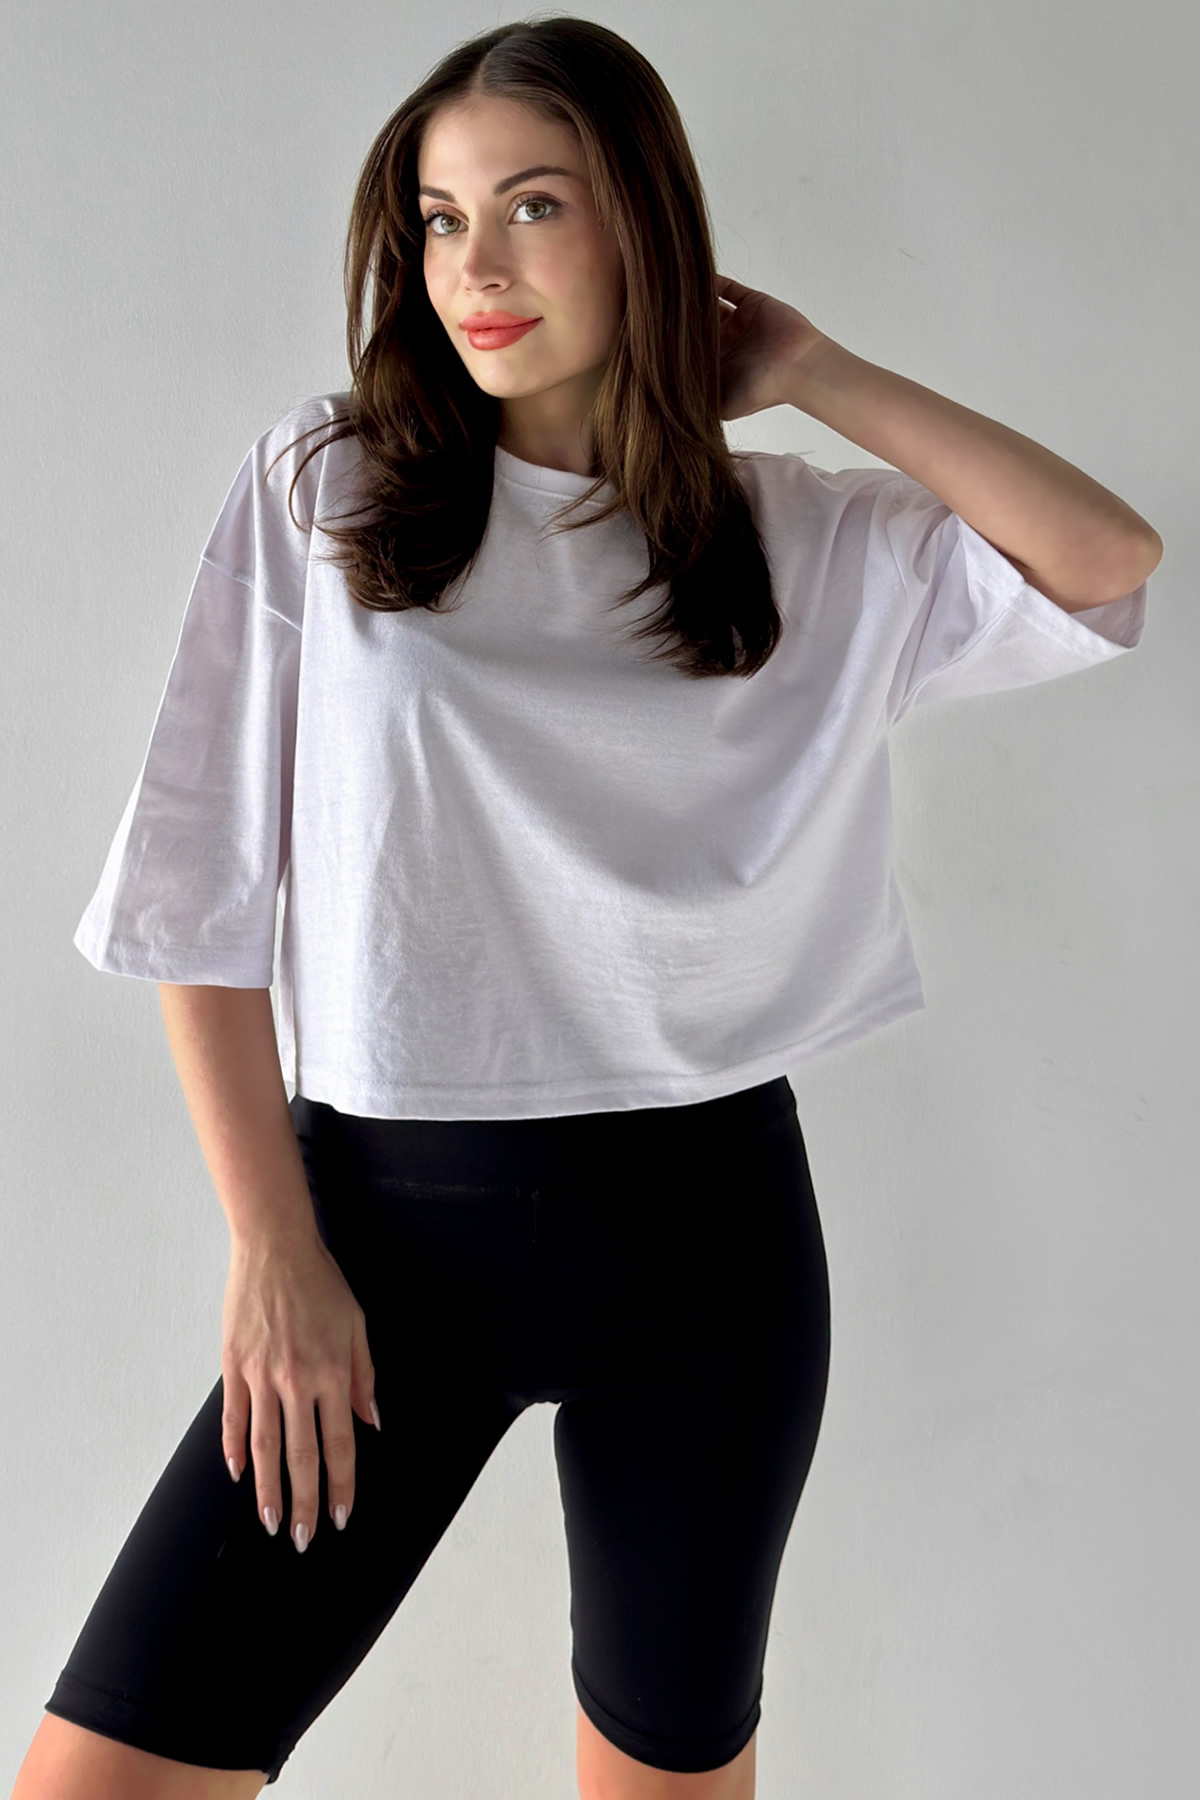 MODAGEN Women's Oversize White Crop Tshirt